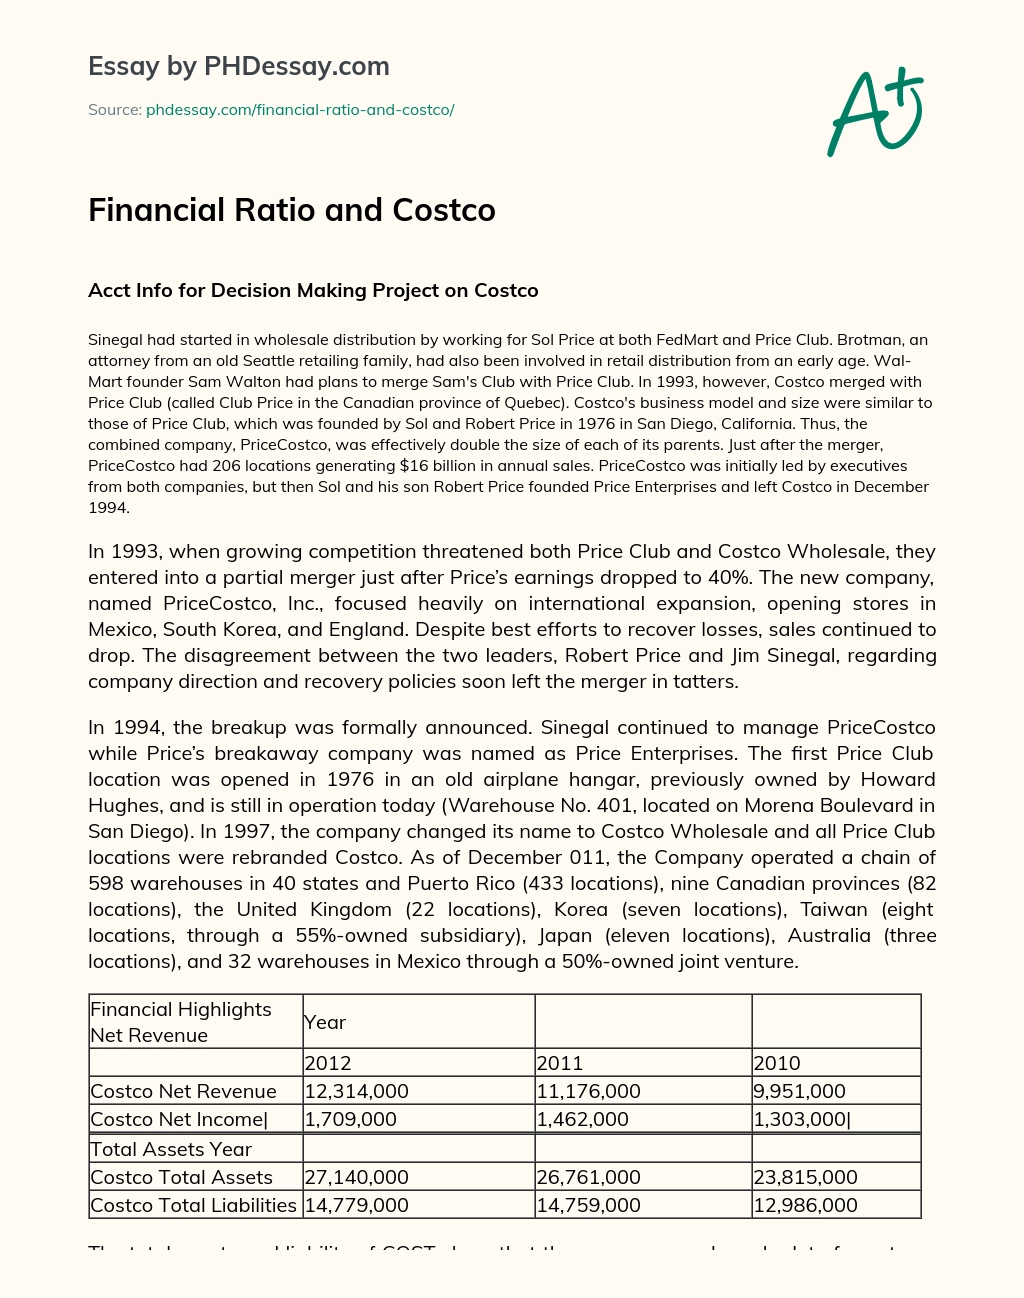 Financial Ratio and Costco essay